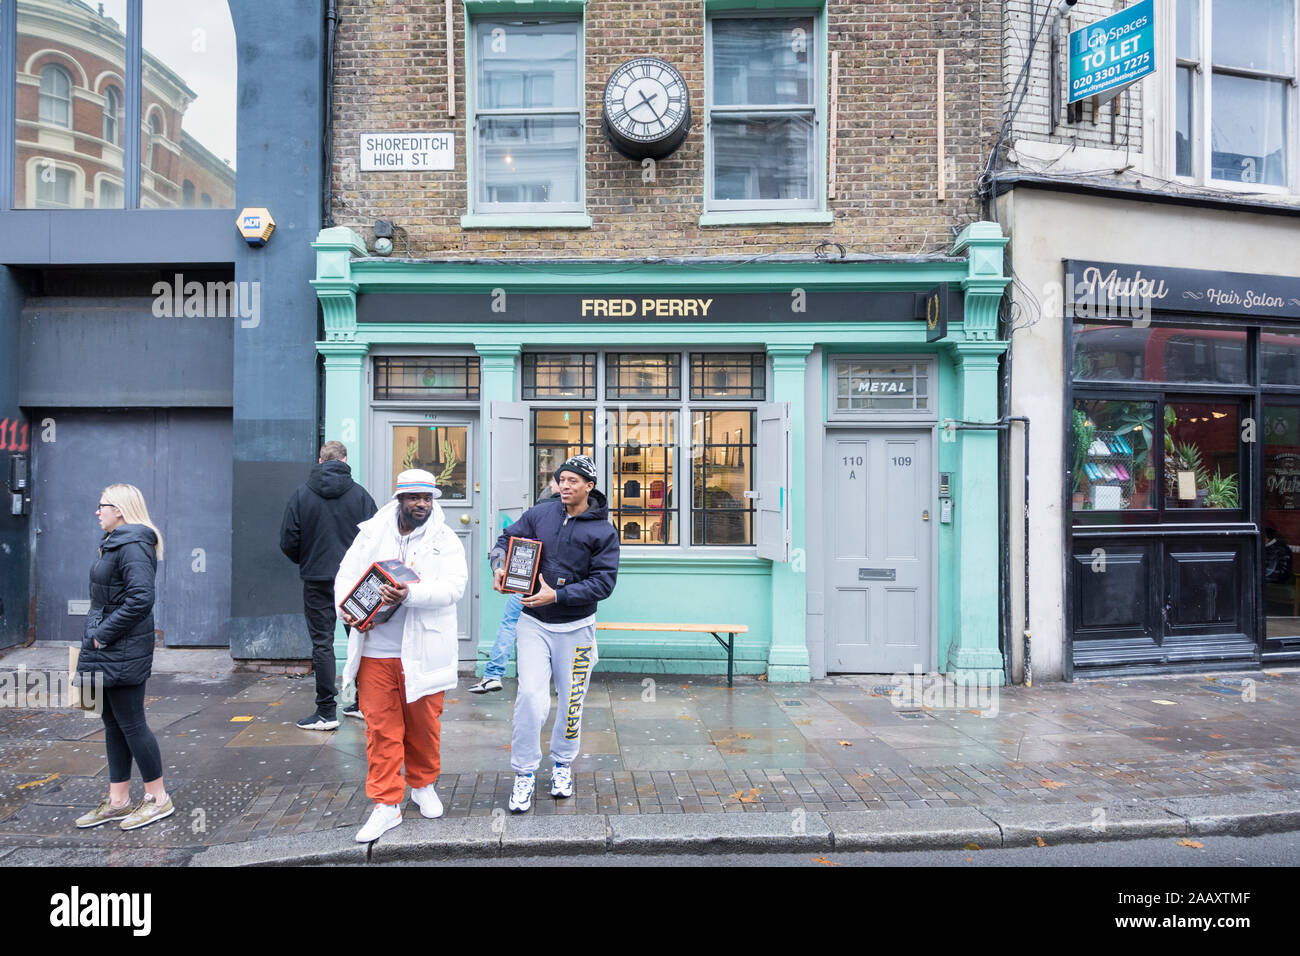 Fred Perry des passants sur Shoreditch High Street, London, London, E1, UK Banque D'Images